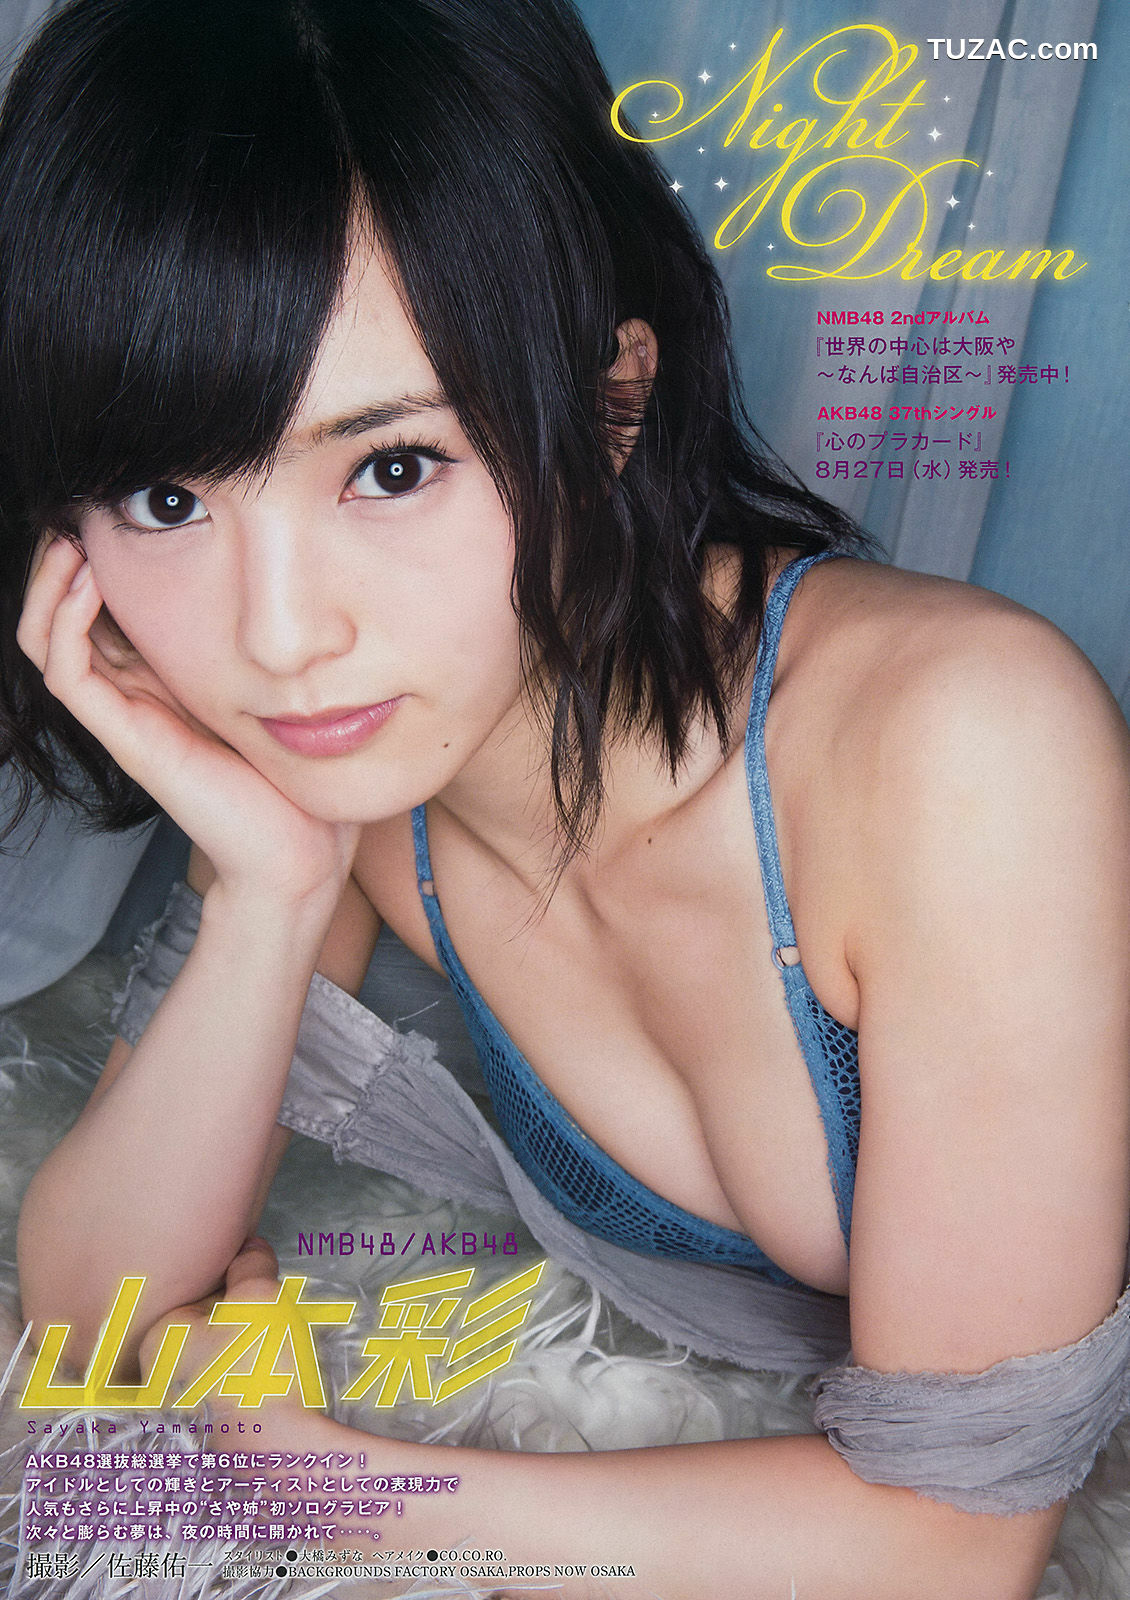 Young Magazine杂志写真_ 山本彩 2014年No.38 写真杂志[11P]